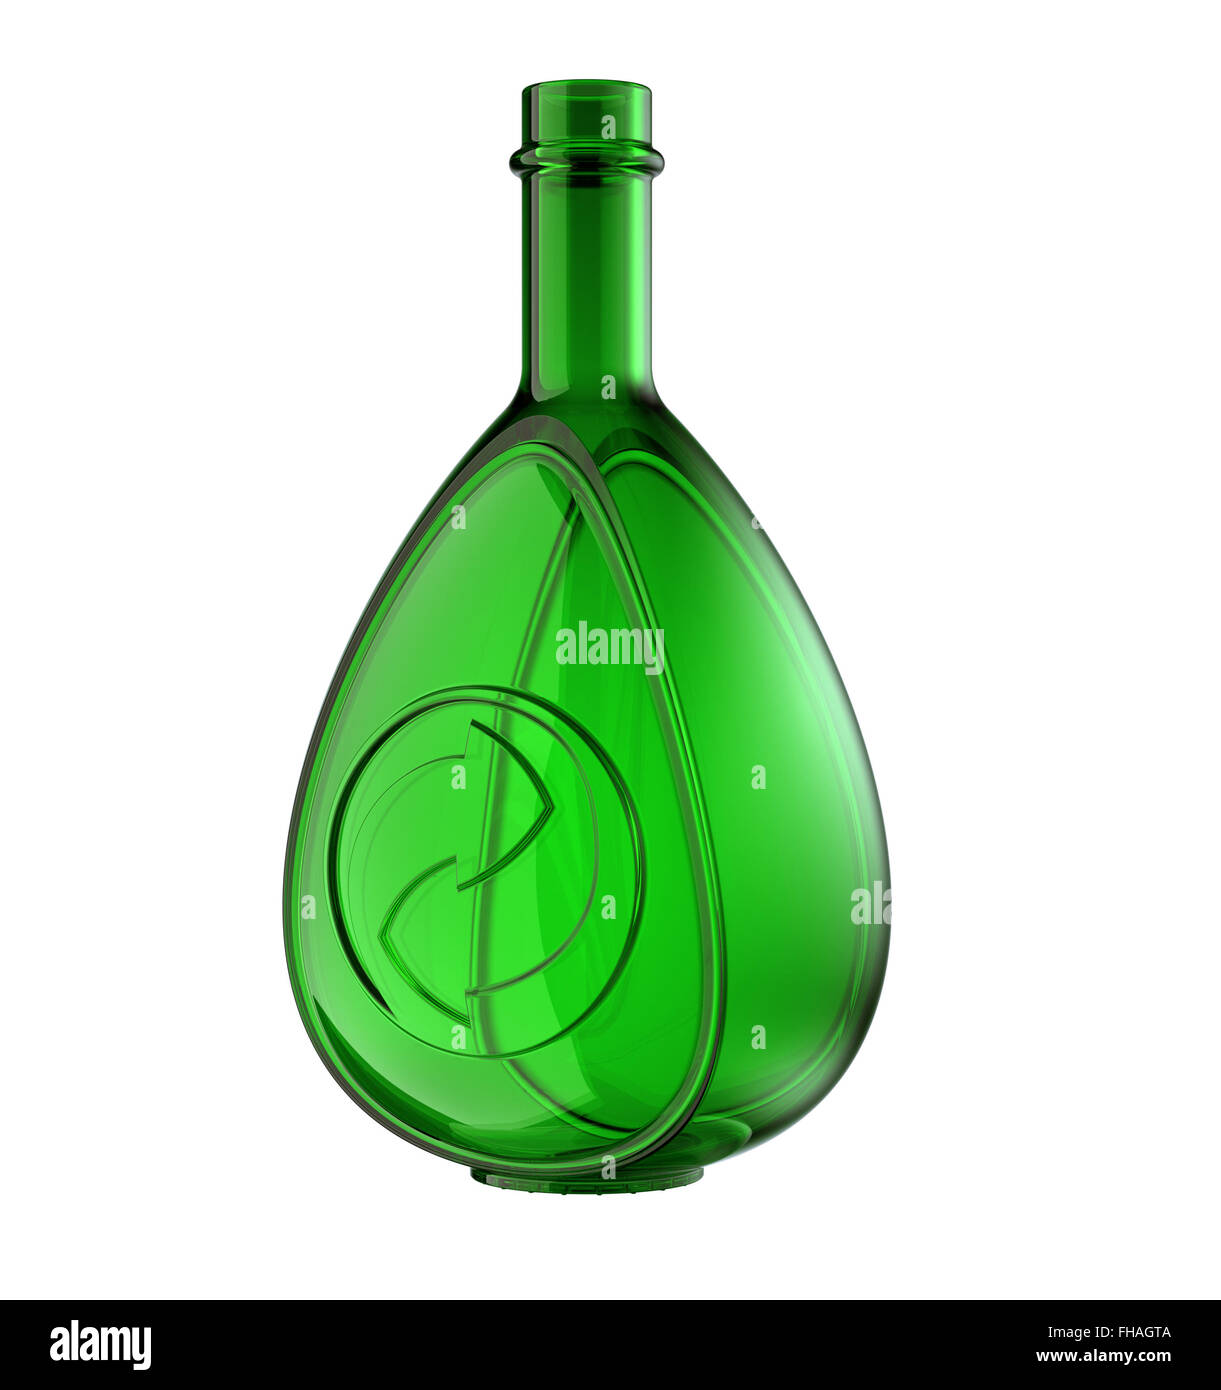 Grüne Flasche Whisky oder Cognac mit recycling-Zeichen isoliert auf weiss Stockfoto